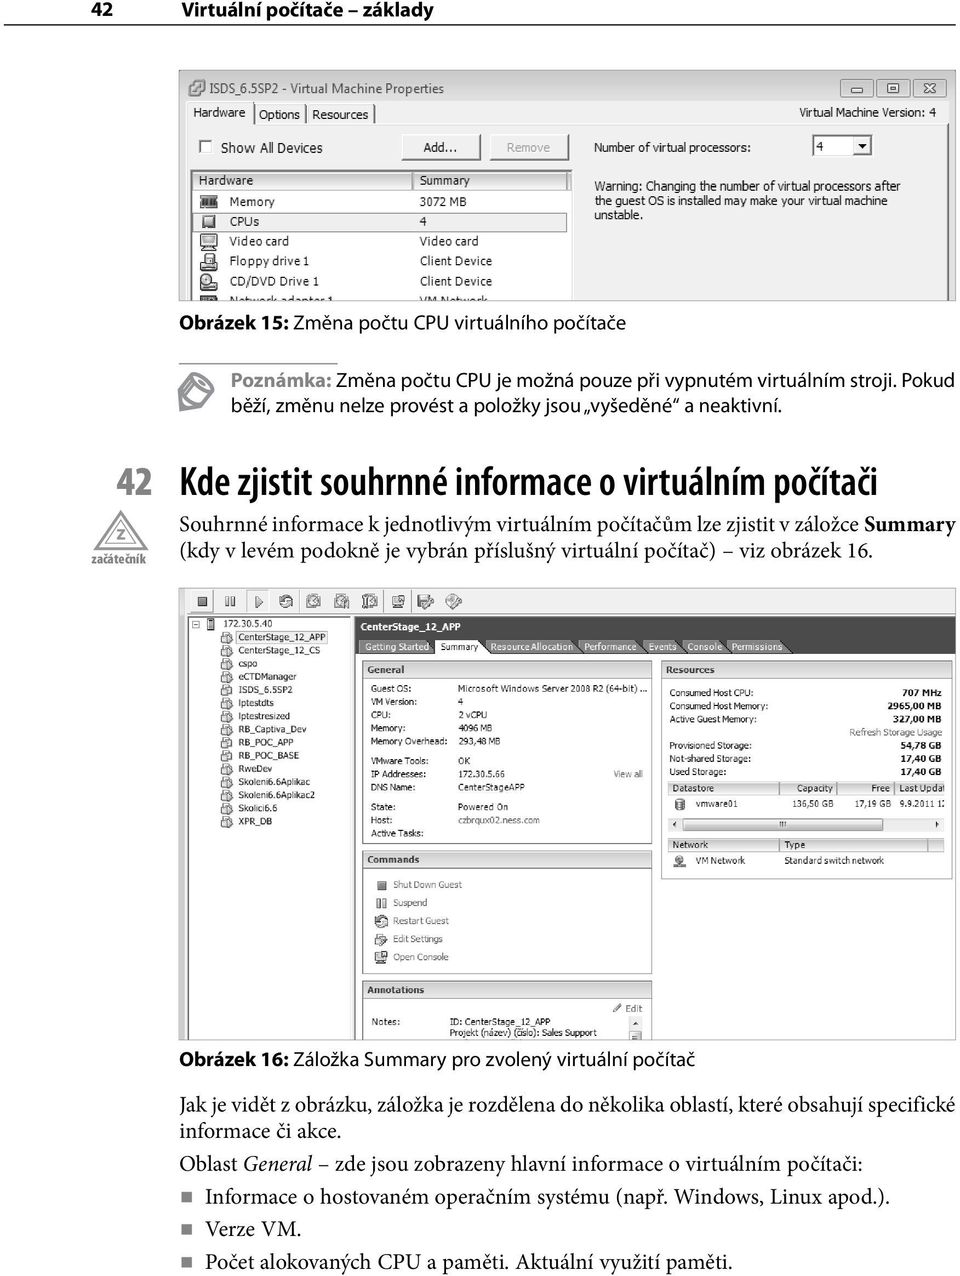 42 Kde zjistit souhrnné informace o virtuálním počítači Souhrnné informace k jednotlivým virtuálním počítačům lze zjistit v záložce Summary (kdy v levém podokně je vybrán příslušný virtuální počítač)